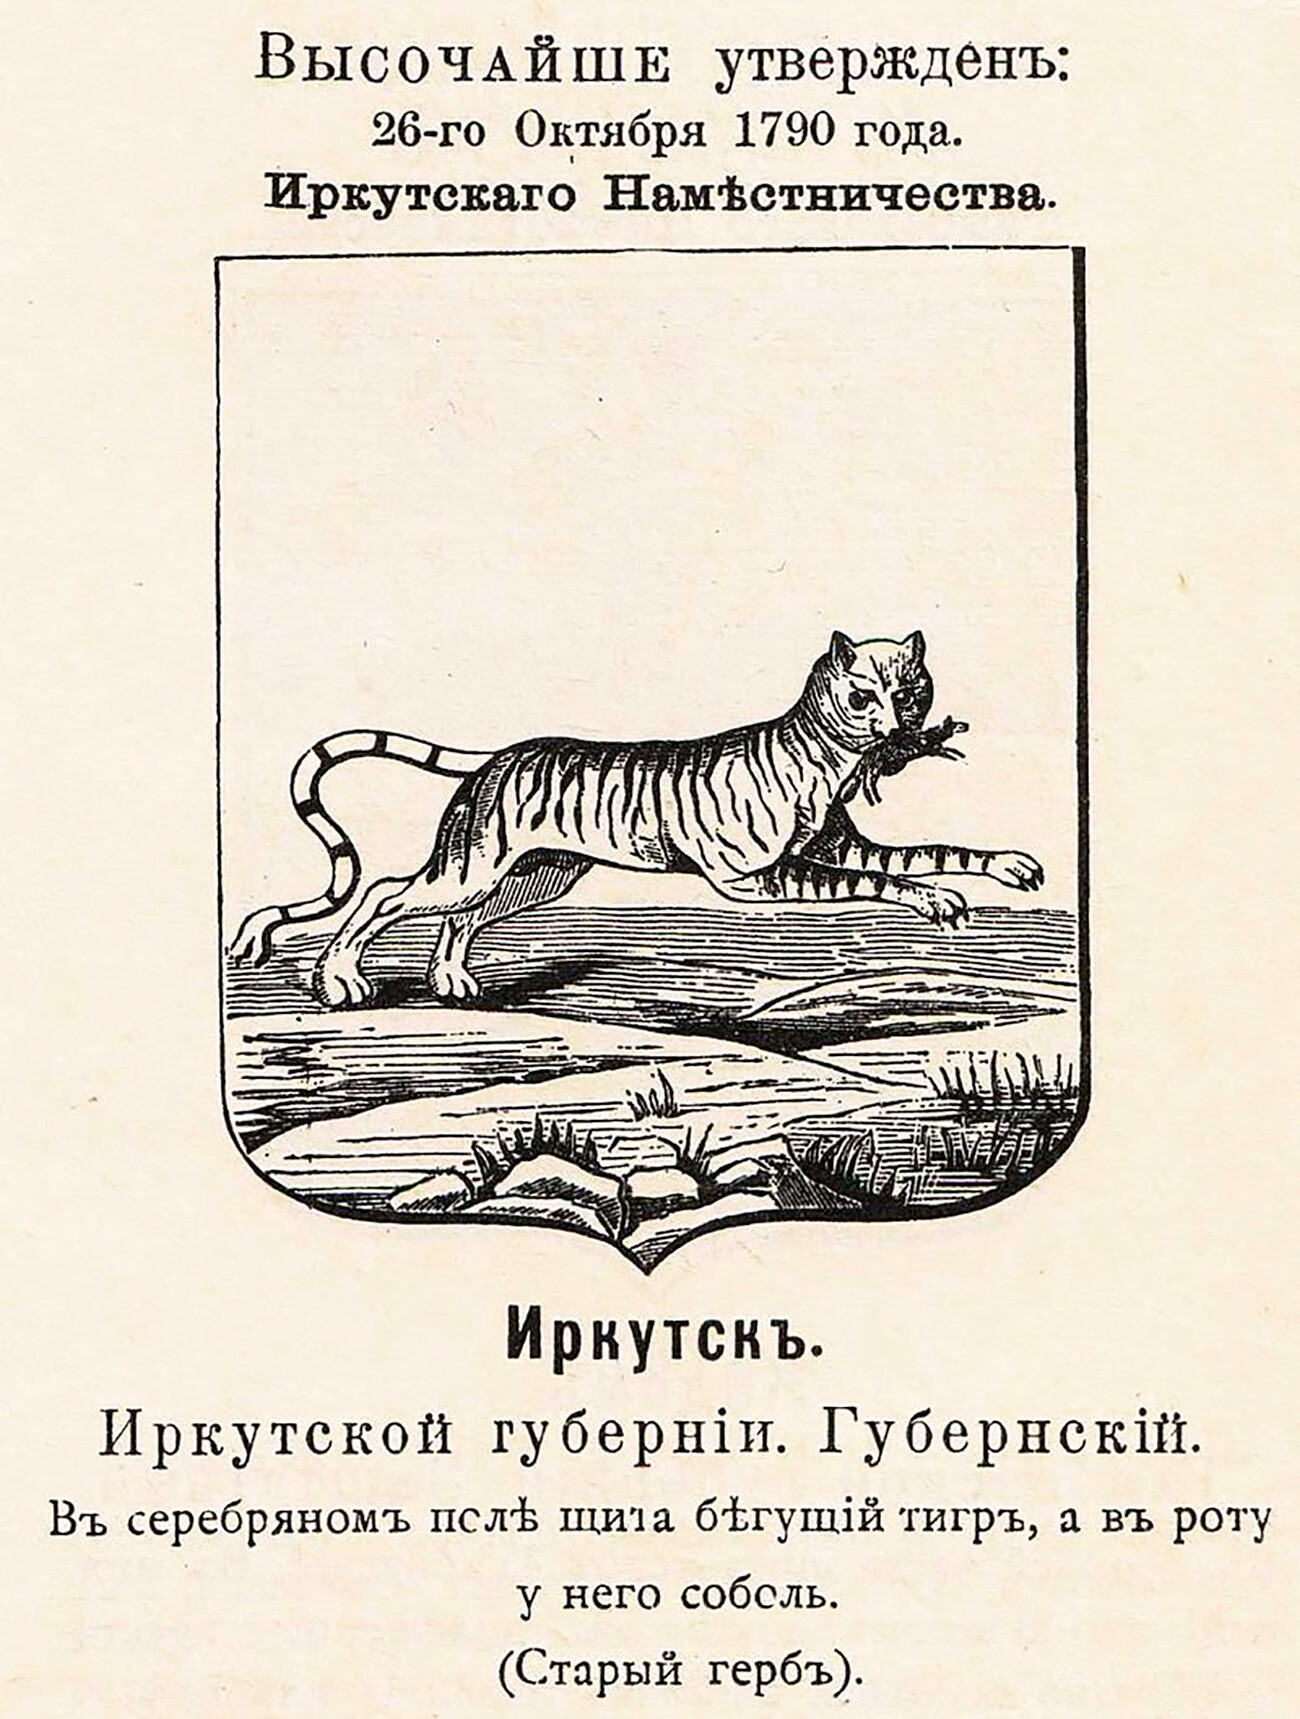 Grb gubernijskog grada Irkutska u Ruskom Carstvu sa službenim opisom u Vinklerovom grbovniku 